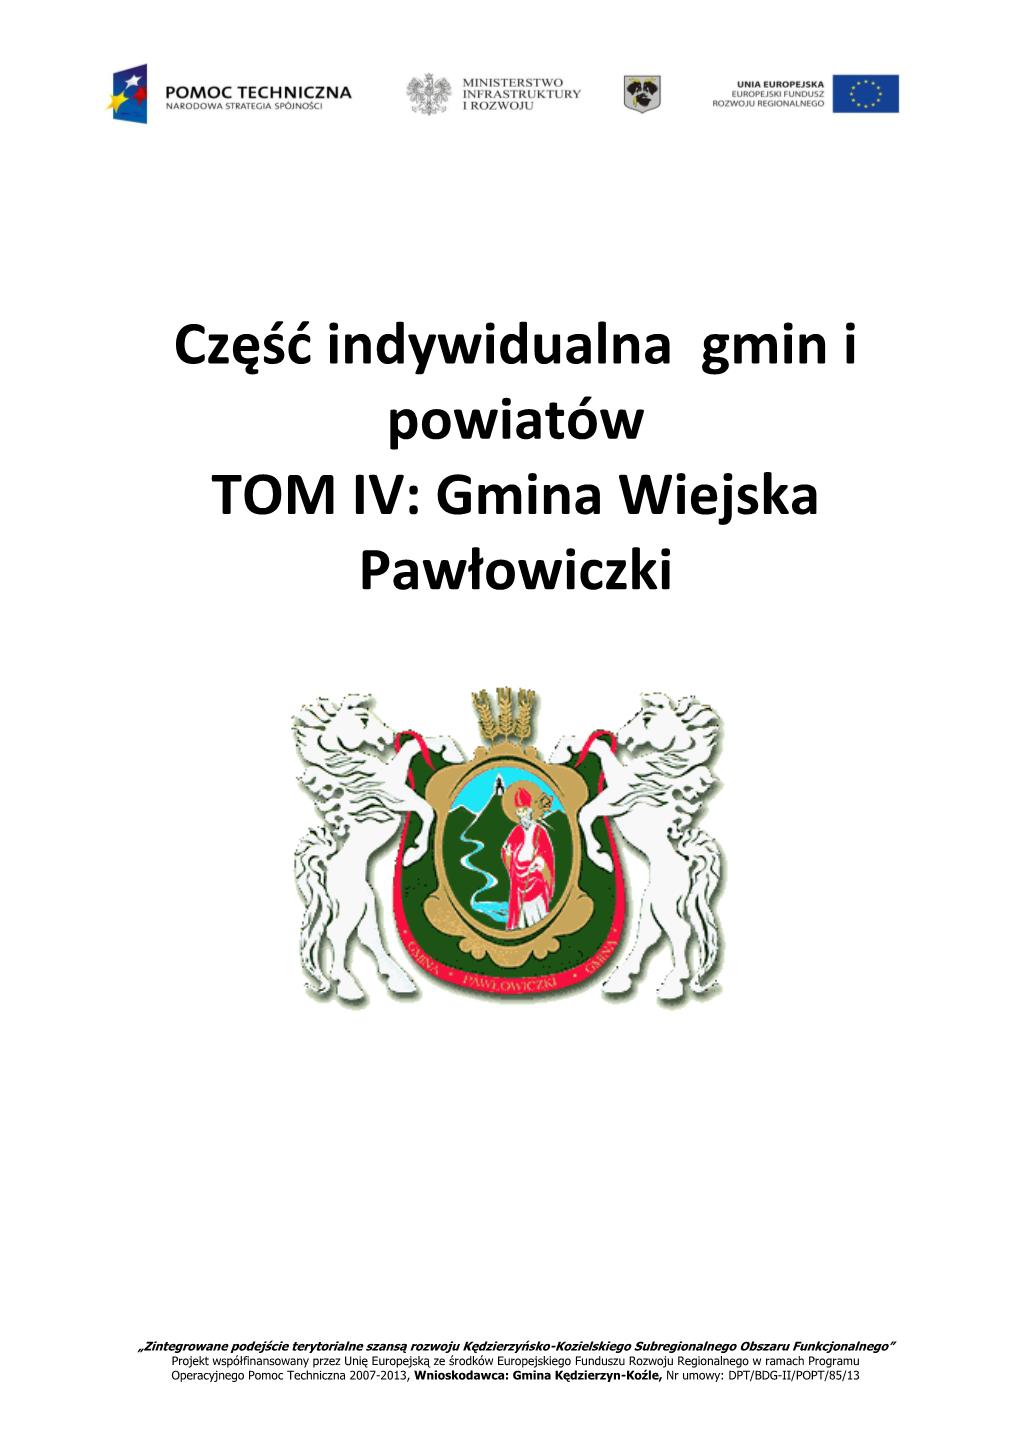 Gmina Wiejska Pawłowiczki